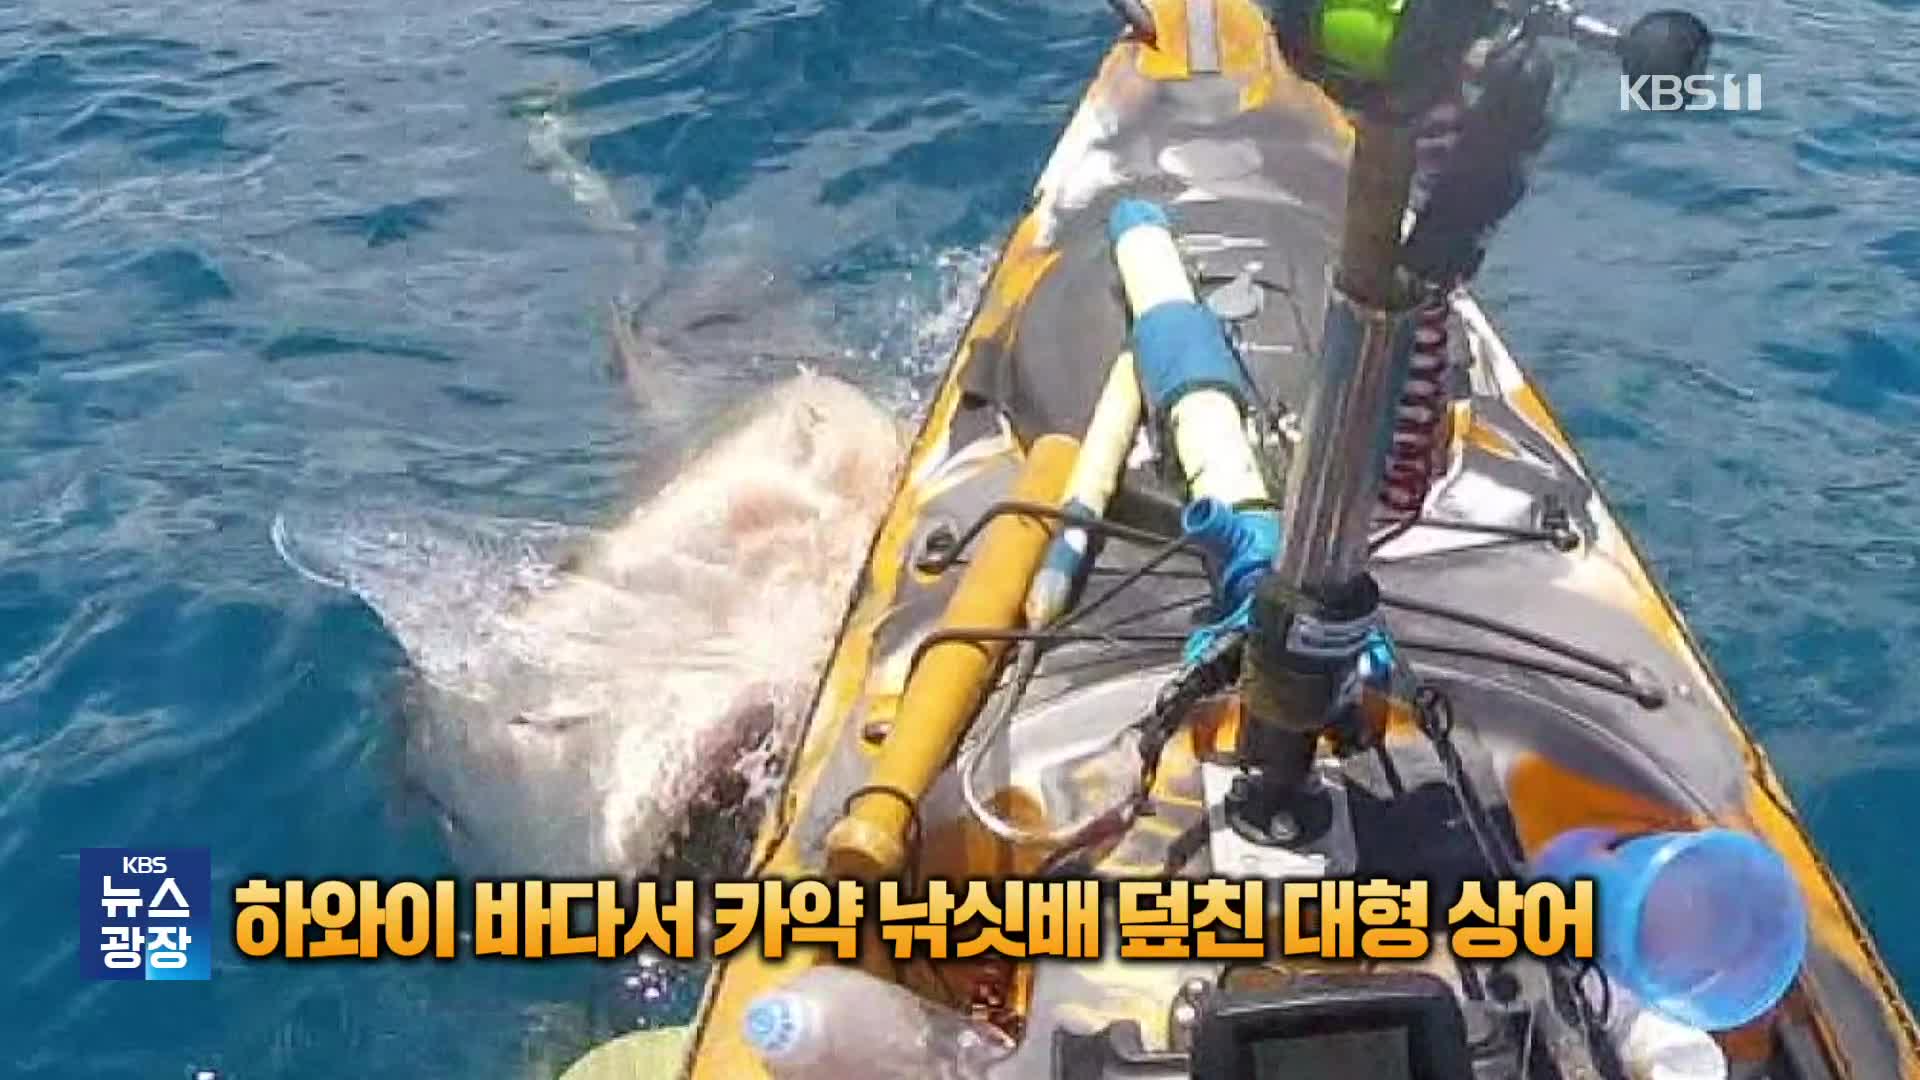 [잇슈 SNS] 하와이 바다서 카약 낚싯배 덮친 대형 상어